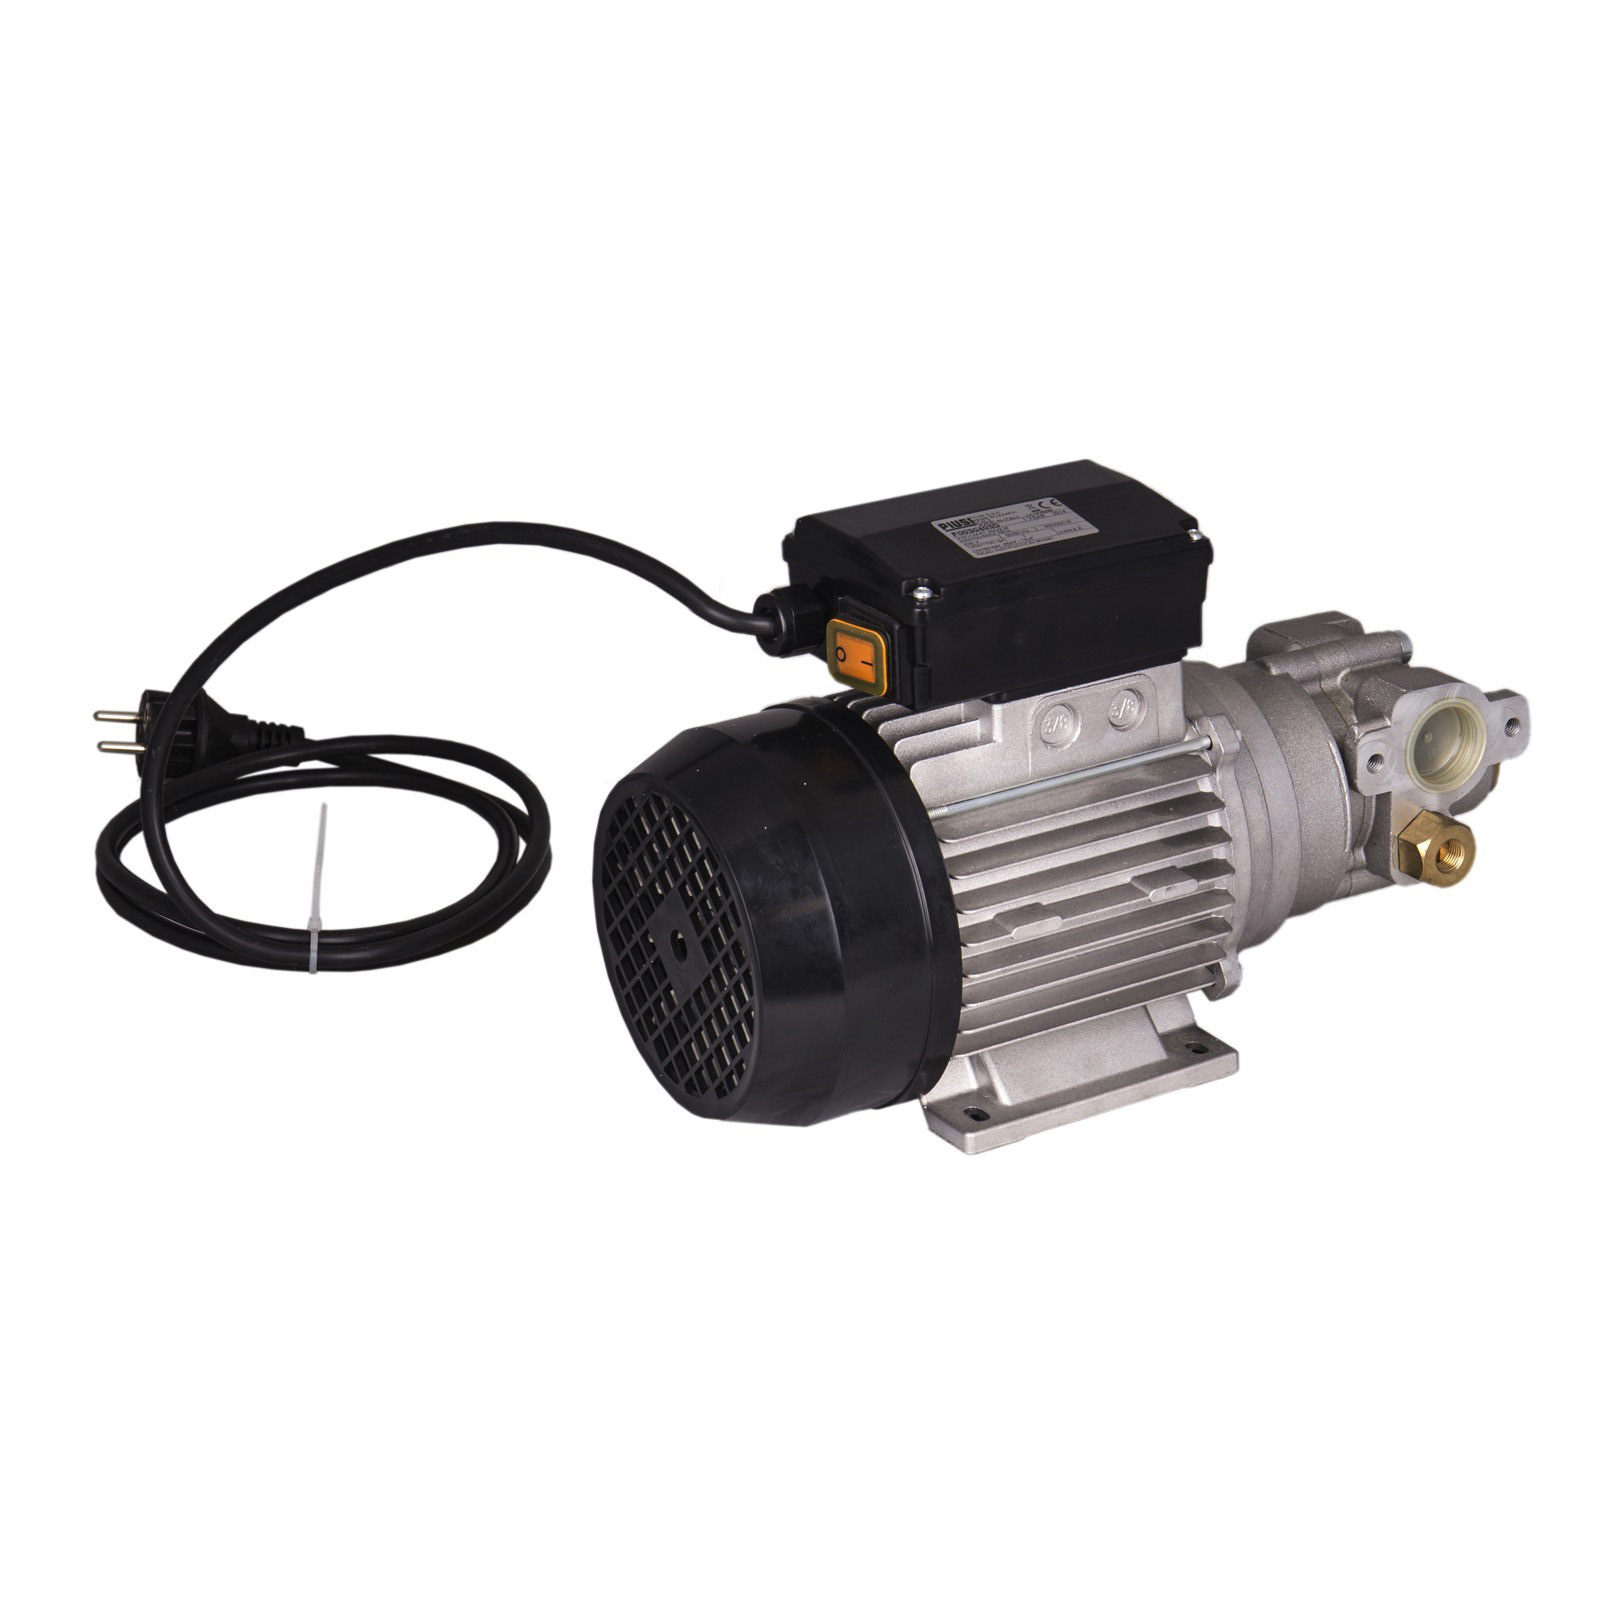 Pompa elettrica per carico e travaso olio sistemi HVACR - 25 bar (362 psi)